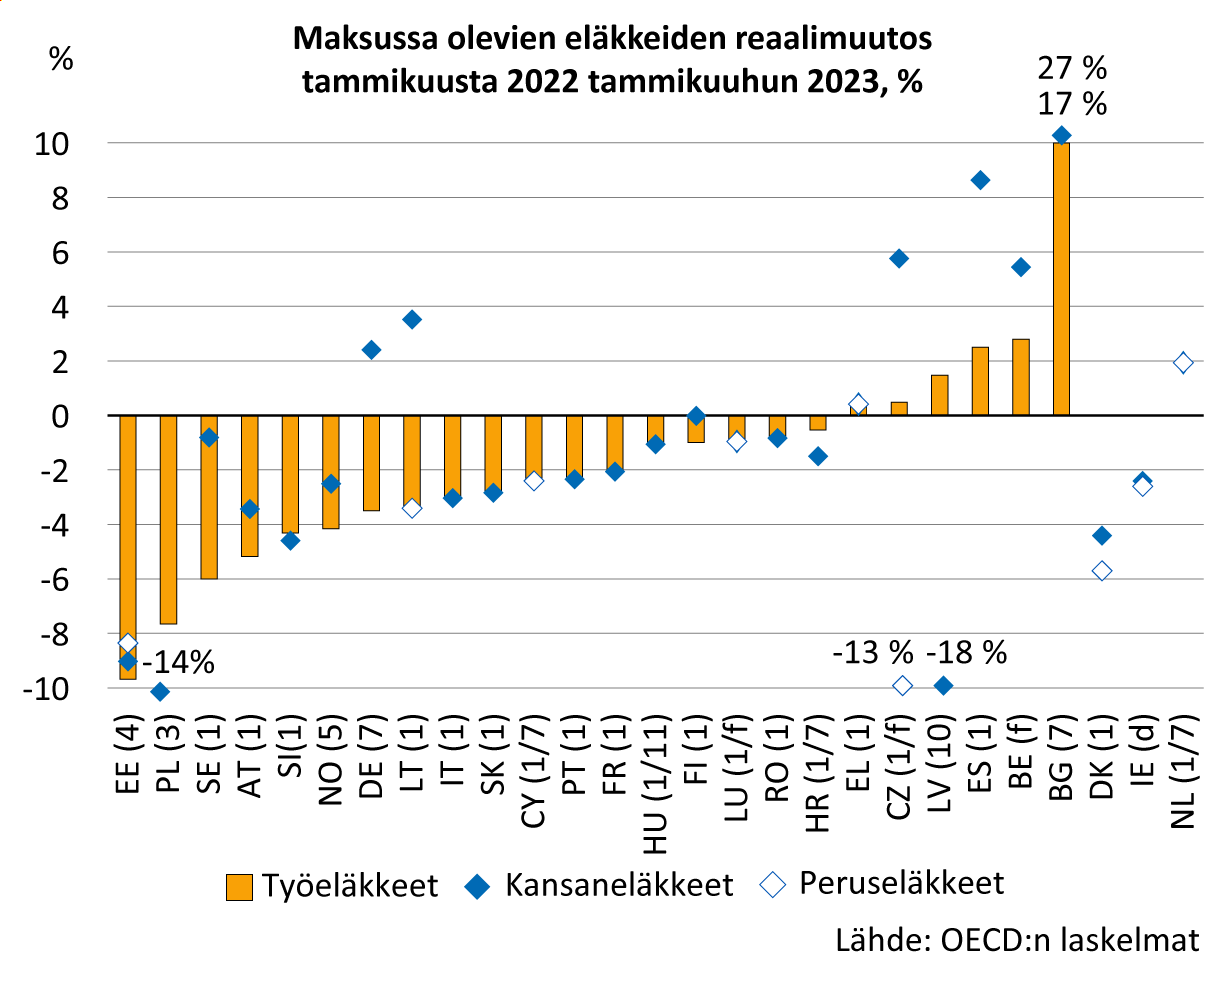 Kuva esittää pylväskaaviota otsikolla “Maksussa olevien eläkkeiden reaalimuutos tammikuusta 2022 tammikuuhun 2023, %". Eläkkeiden reaaliarvo on noussut eniten Bulgariassa. Heikoin reaaliarvokehitys on Virossa.